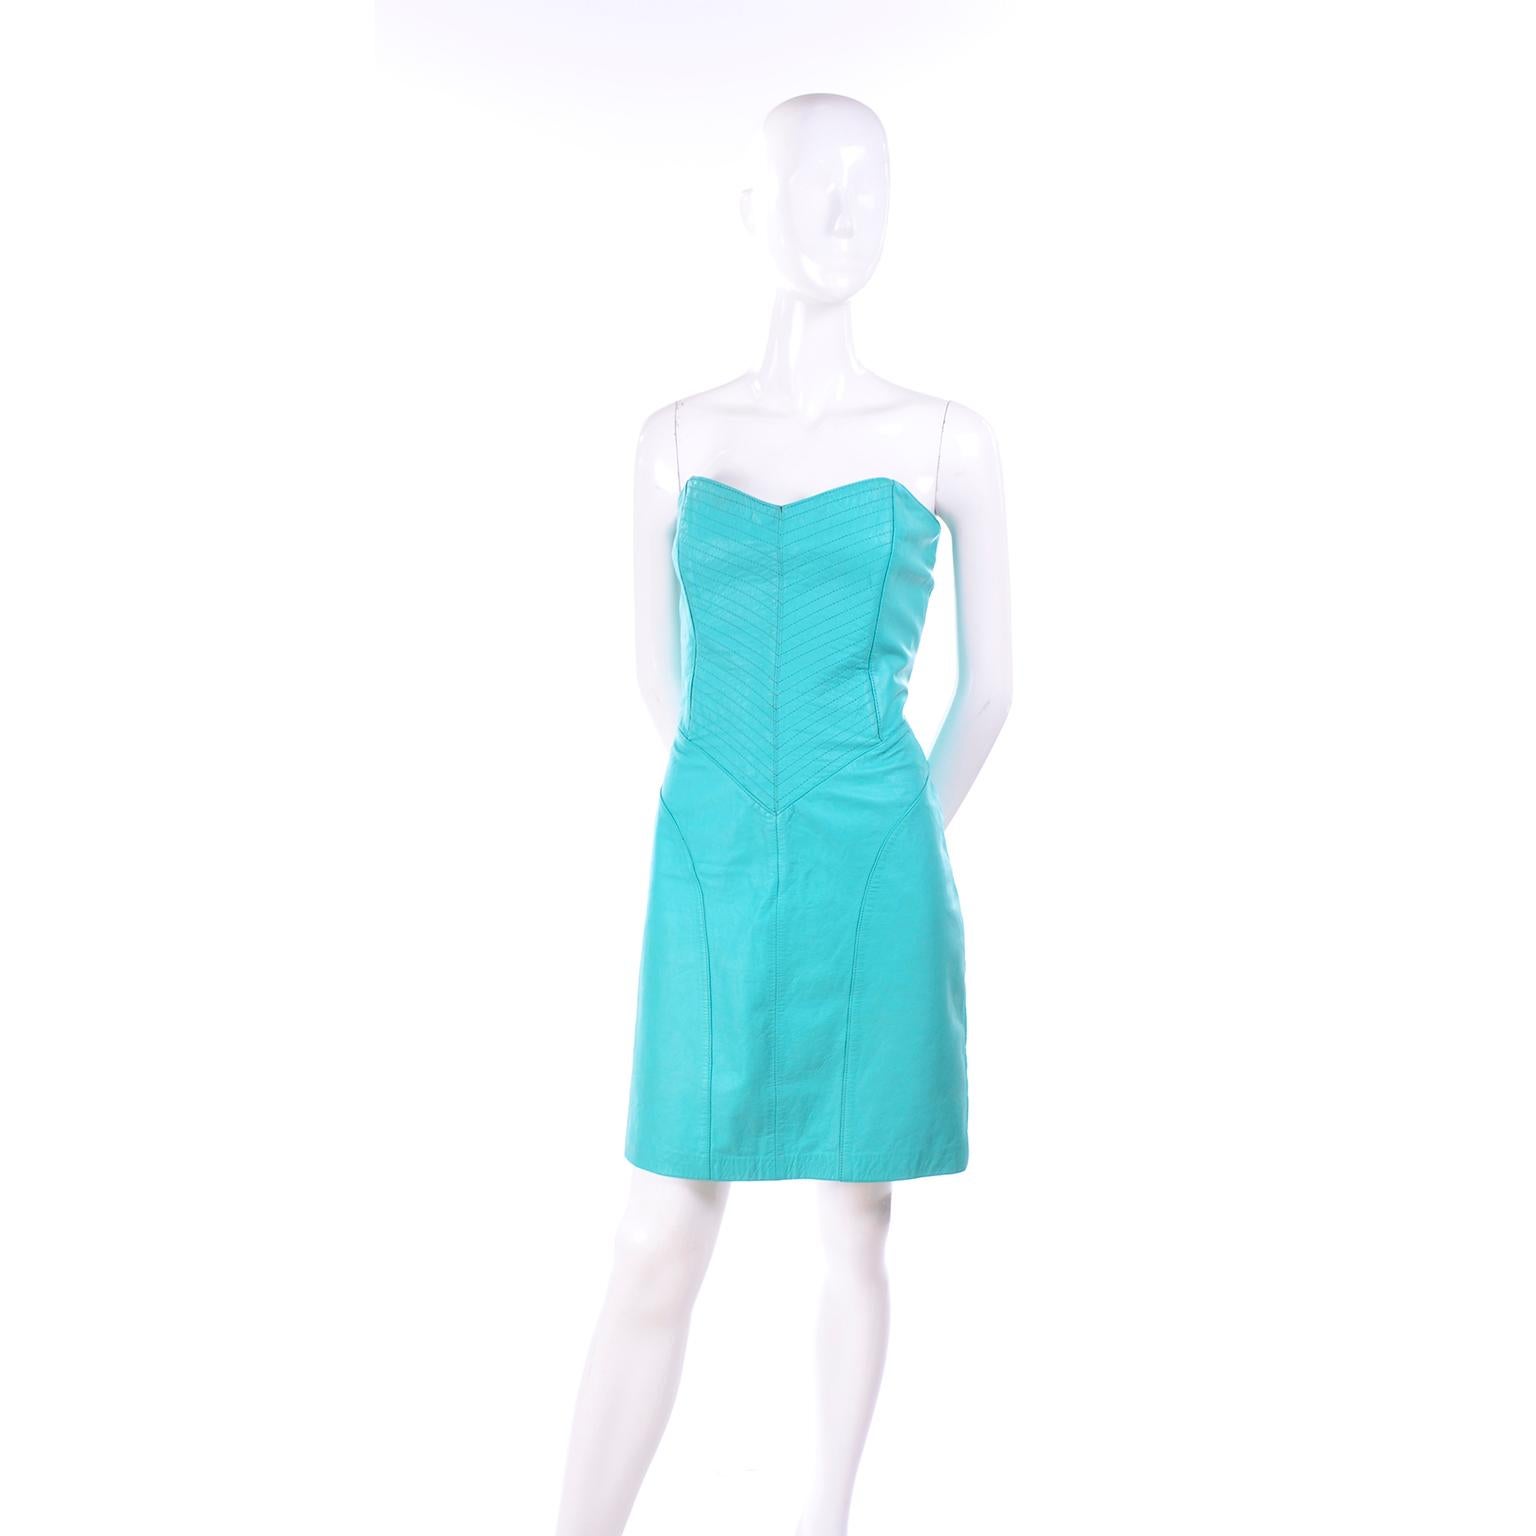 Dies ist ein Vintage Yucatan Bay 1980's trägerlosen Türkis Leder Kleid	aus den 1980er Jahren. Dieses trägerlose Lederkleid hat interessante Steppnähte und detaillierte Nähte. Das Kleid kann als Abendkleid oder als Tageskleid getragen werden!  Dieses